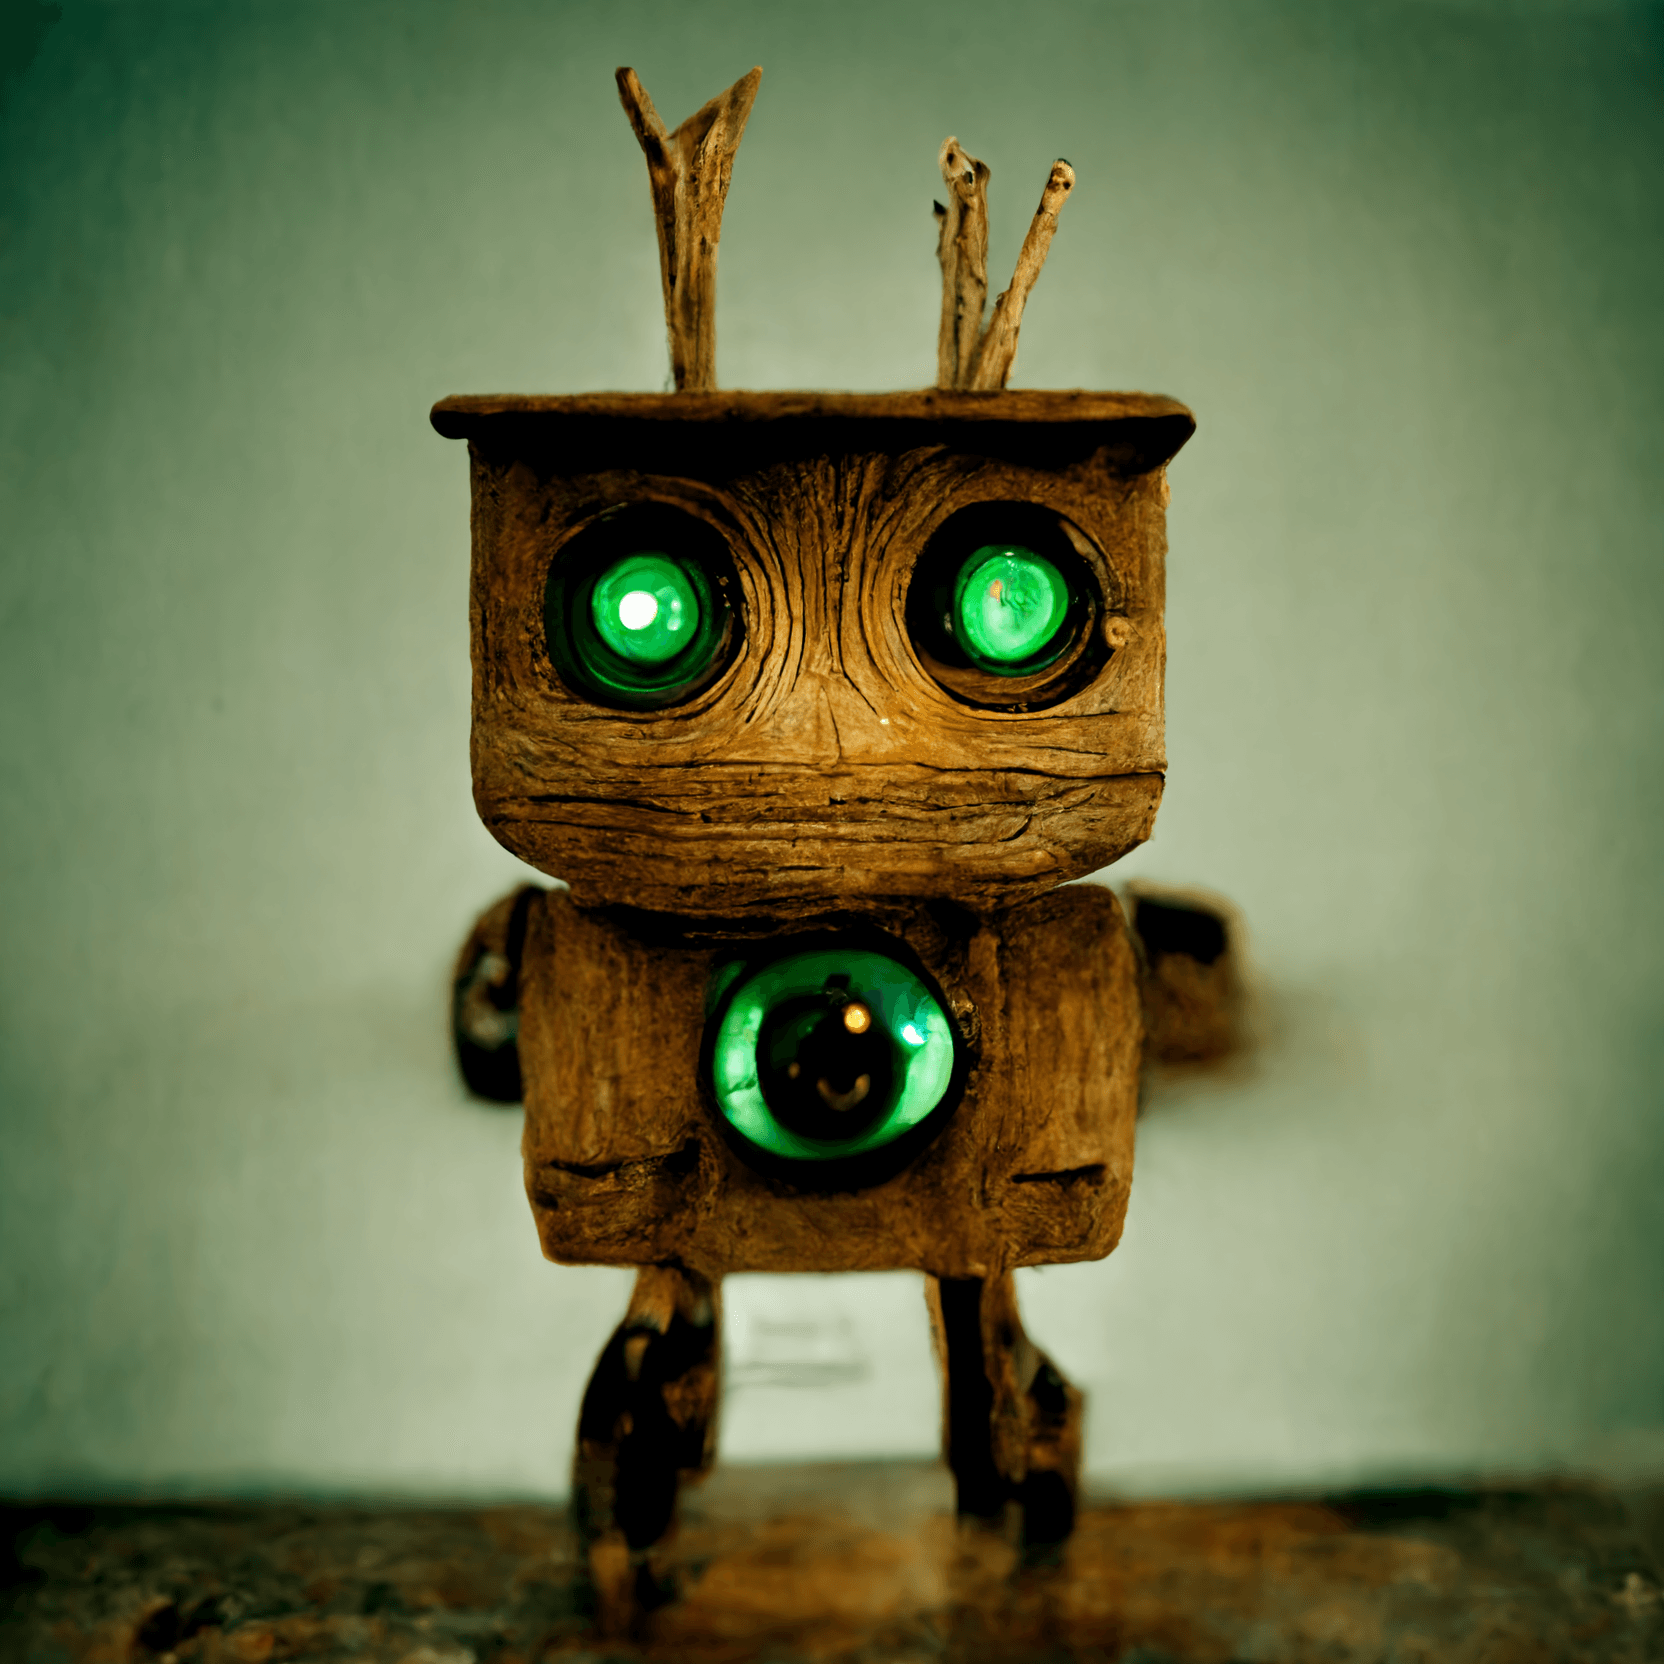 Wooden robot "Gem"